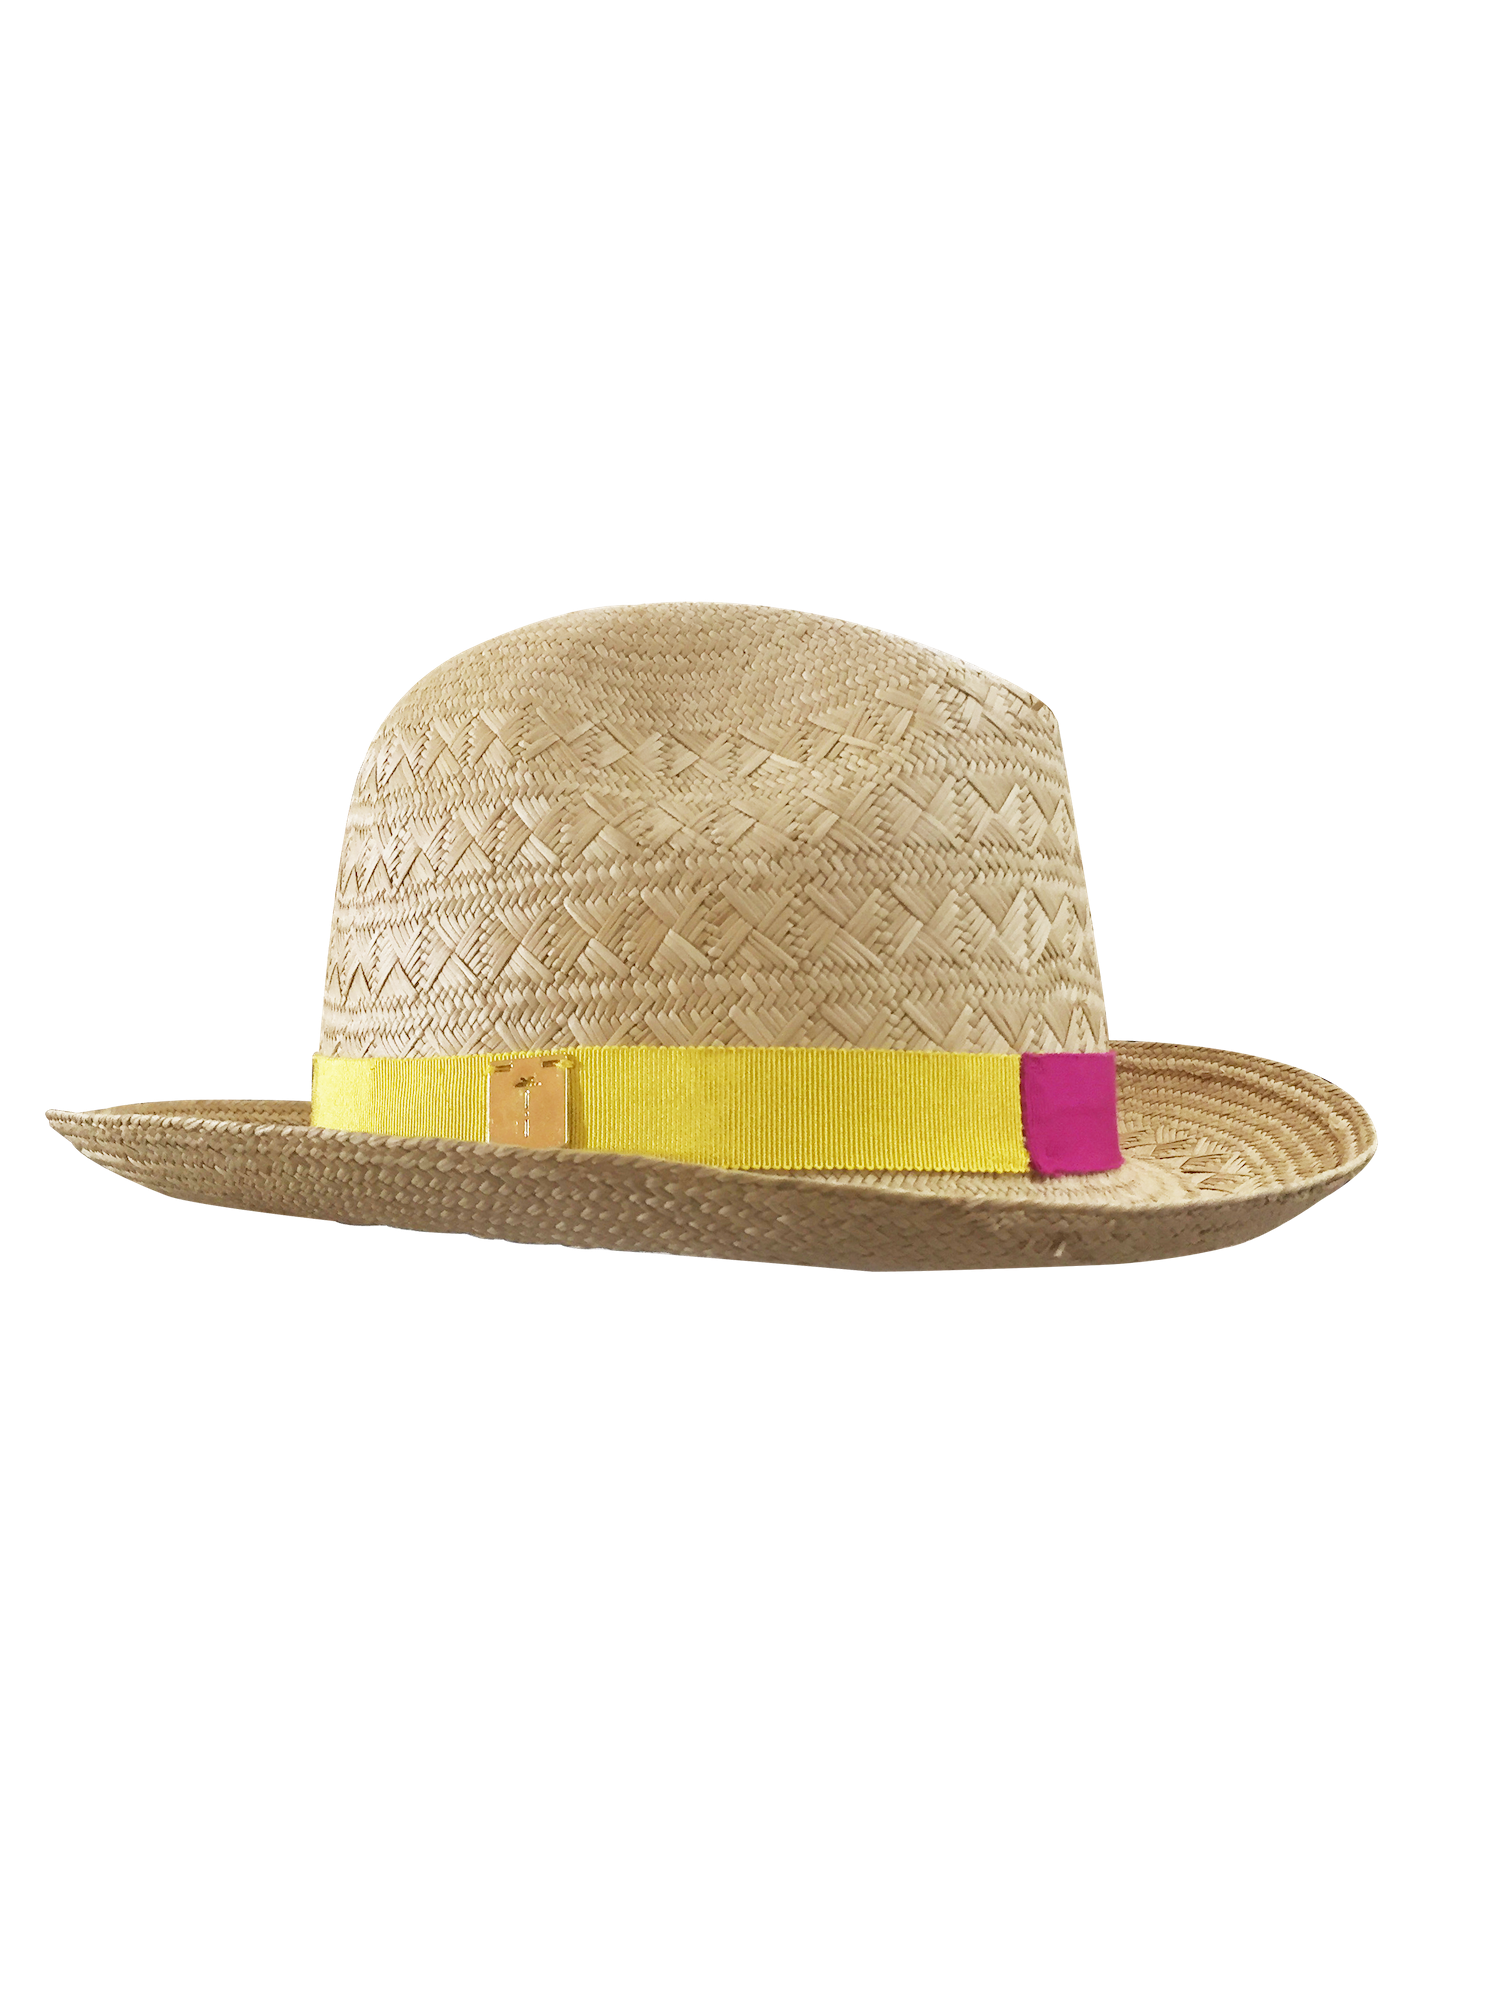 BOSSA - chapeau de paille bicolor jaune/fushia - marque française tatiane de fretias